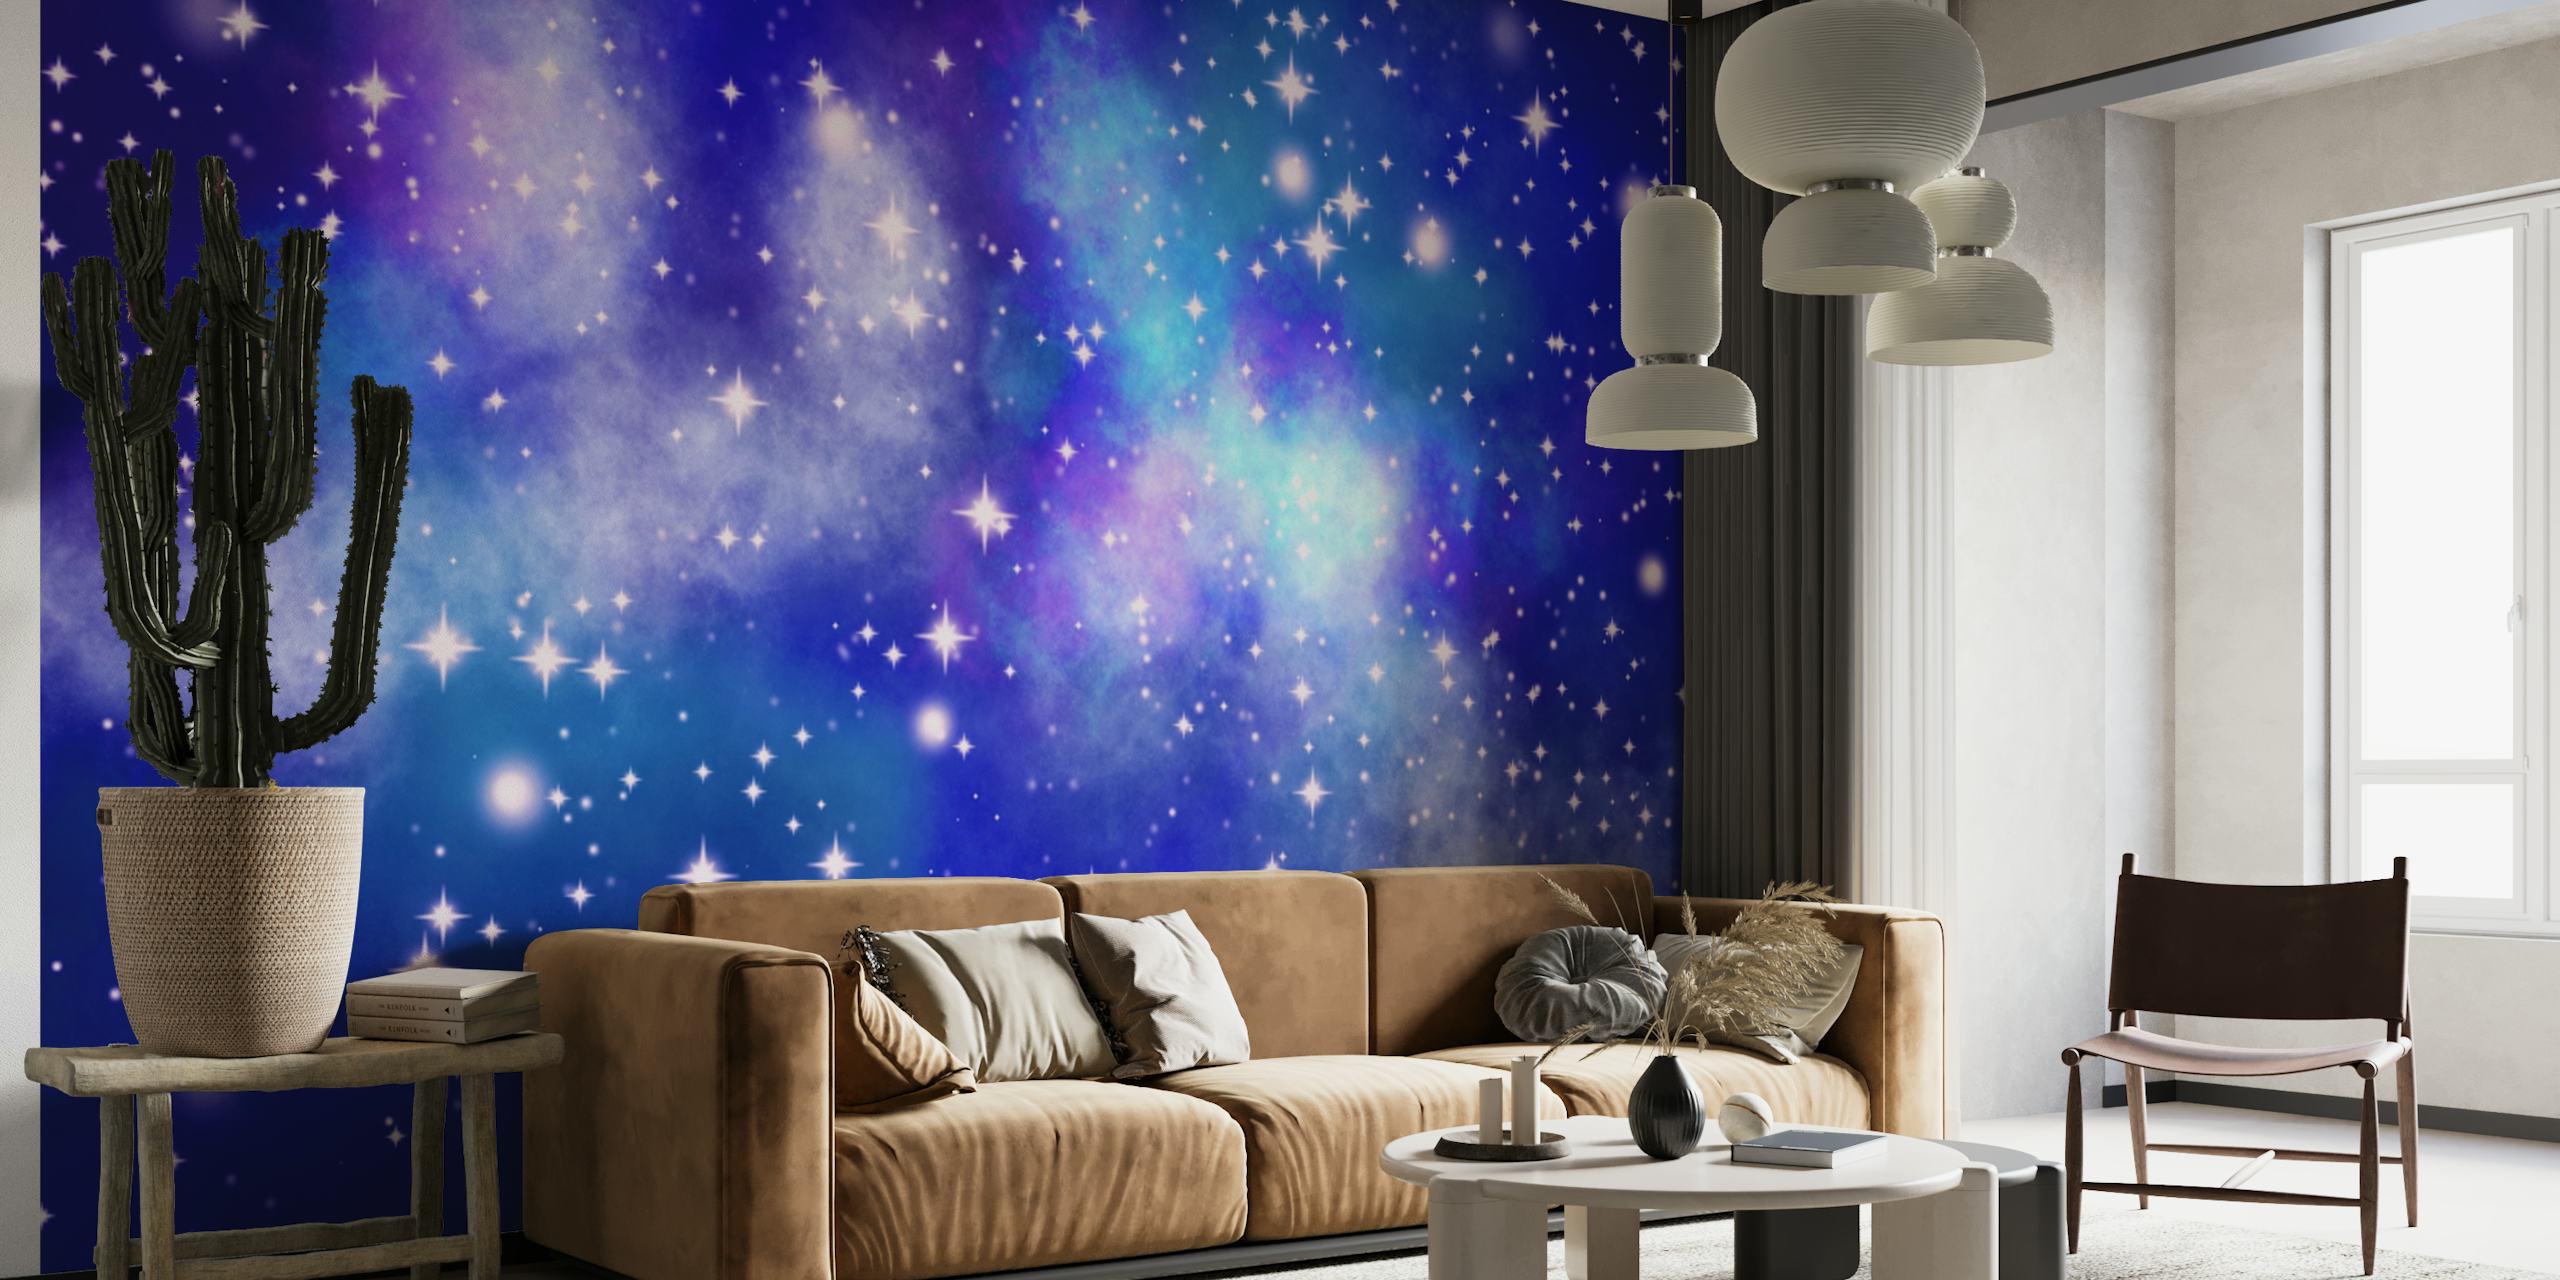 Stjerneklar nattehimmel med ulike nyanser av blått og blinkende stjerner som representerer et veggmaleri med utsikt over galaksen